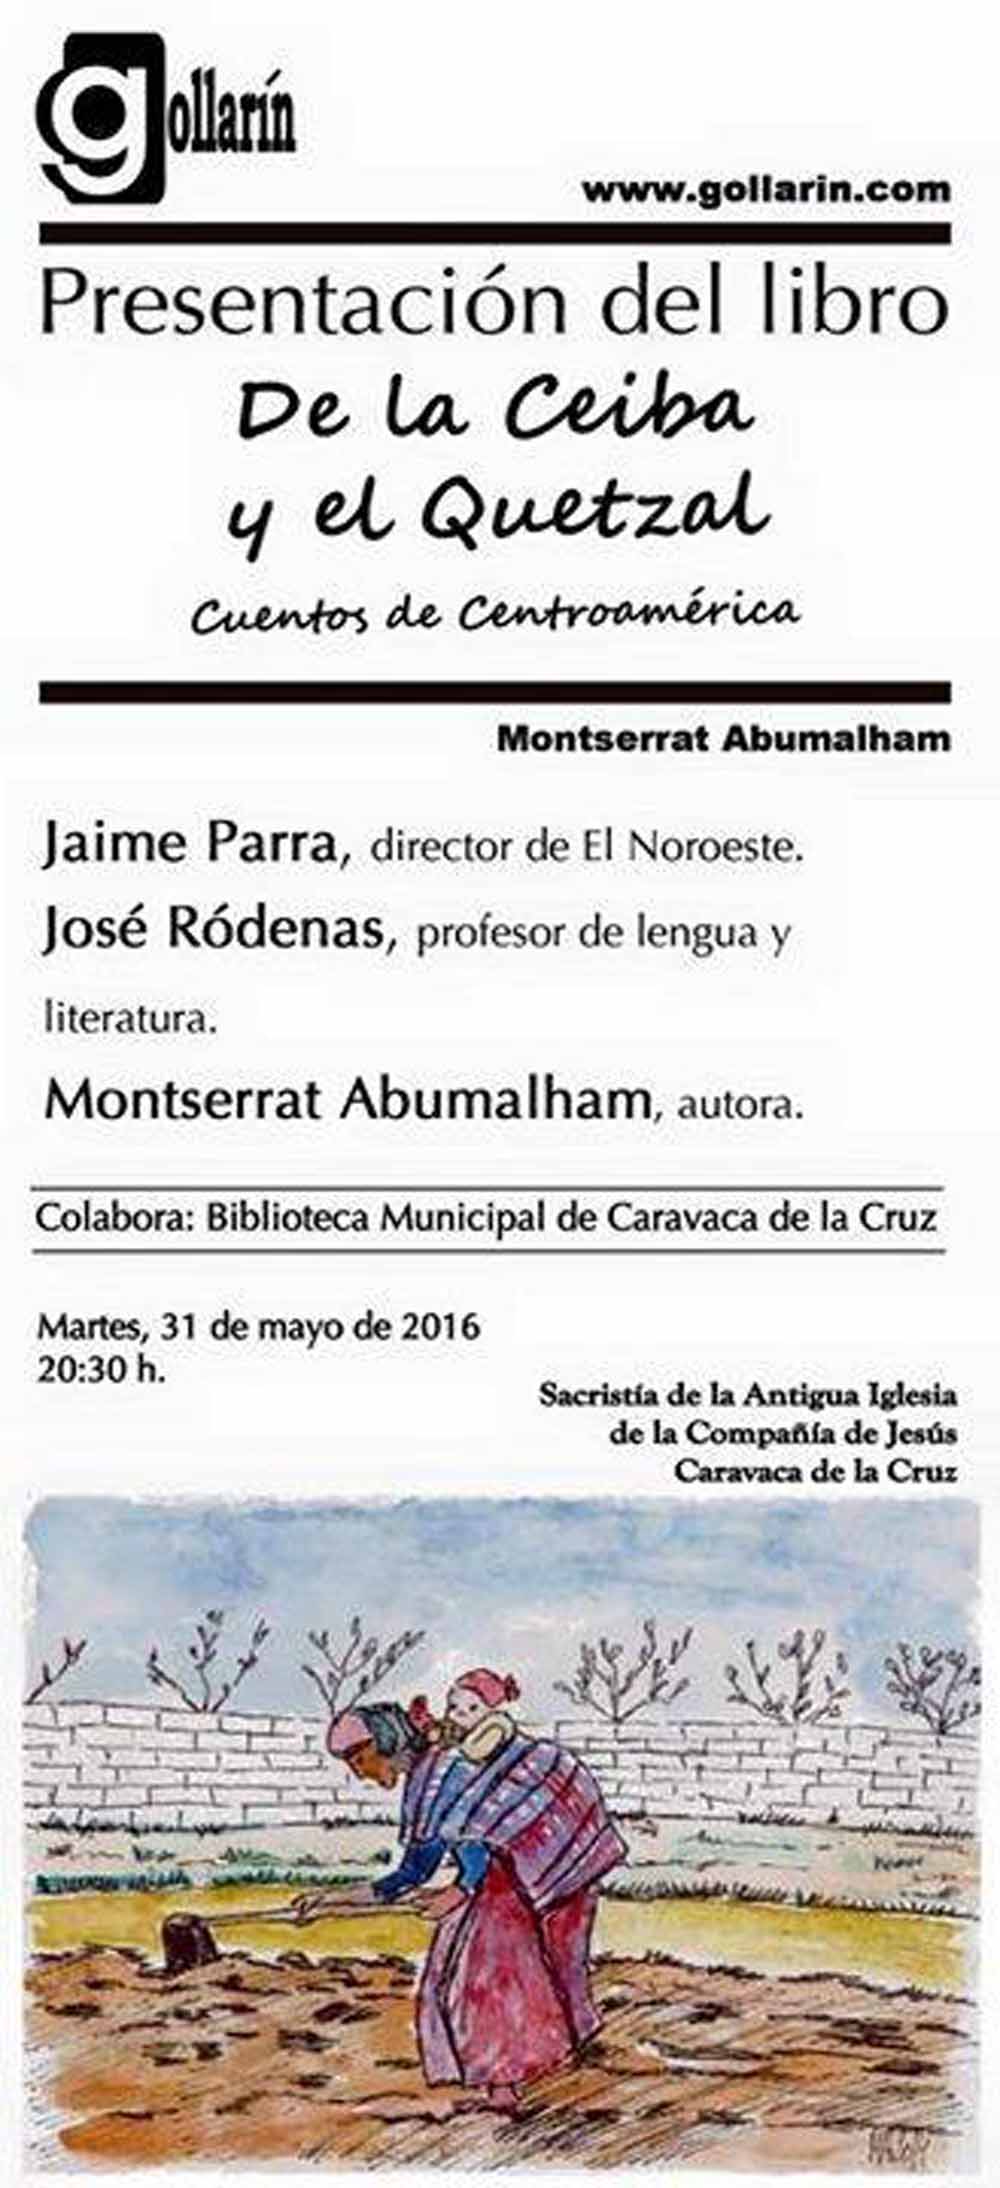 Monserrat Abumalham presenta “De la Ceiba y el Quetzal” en la Feria del Libro de Caravaca